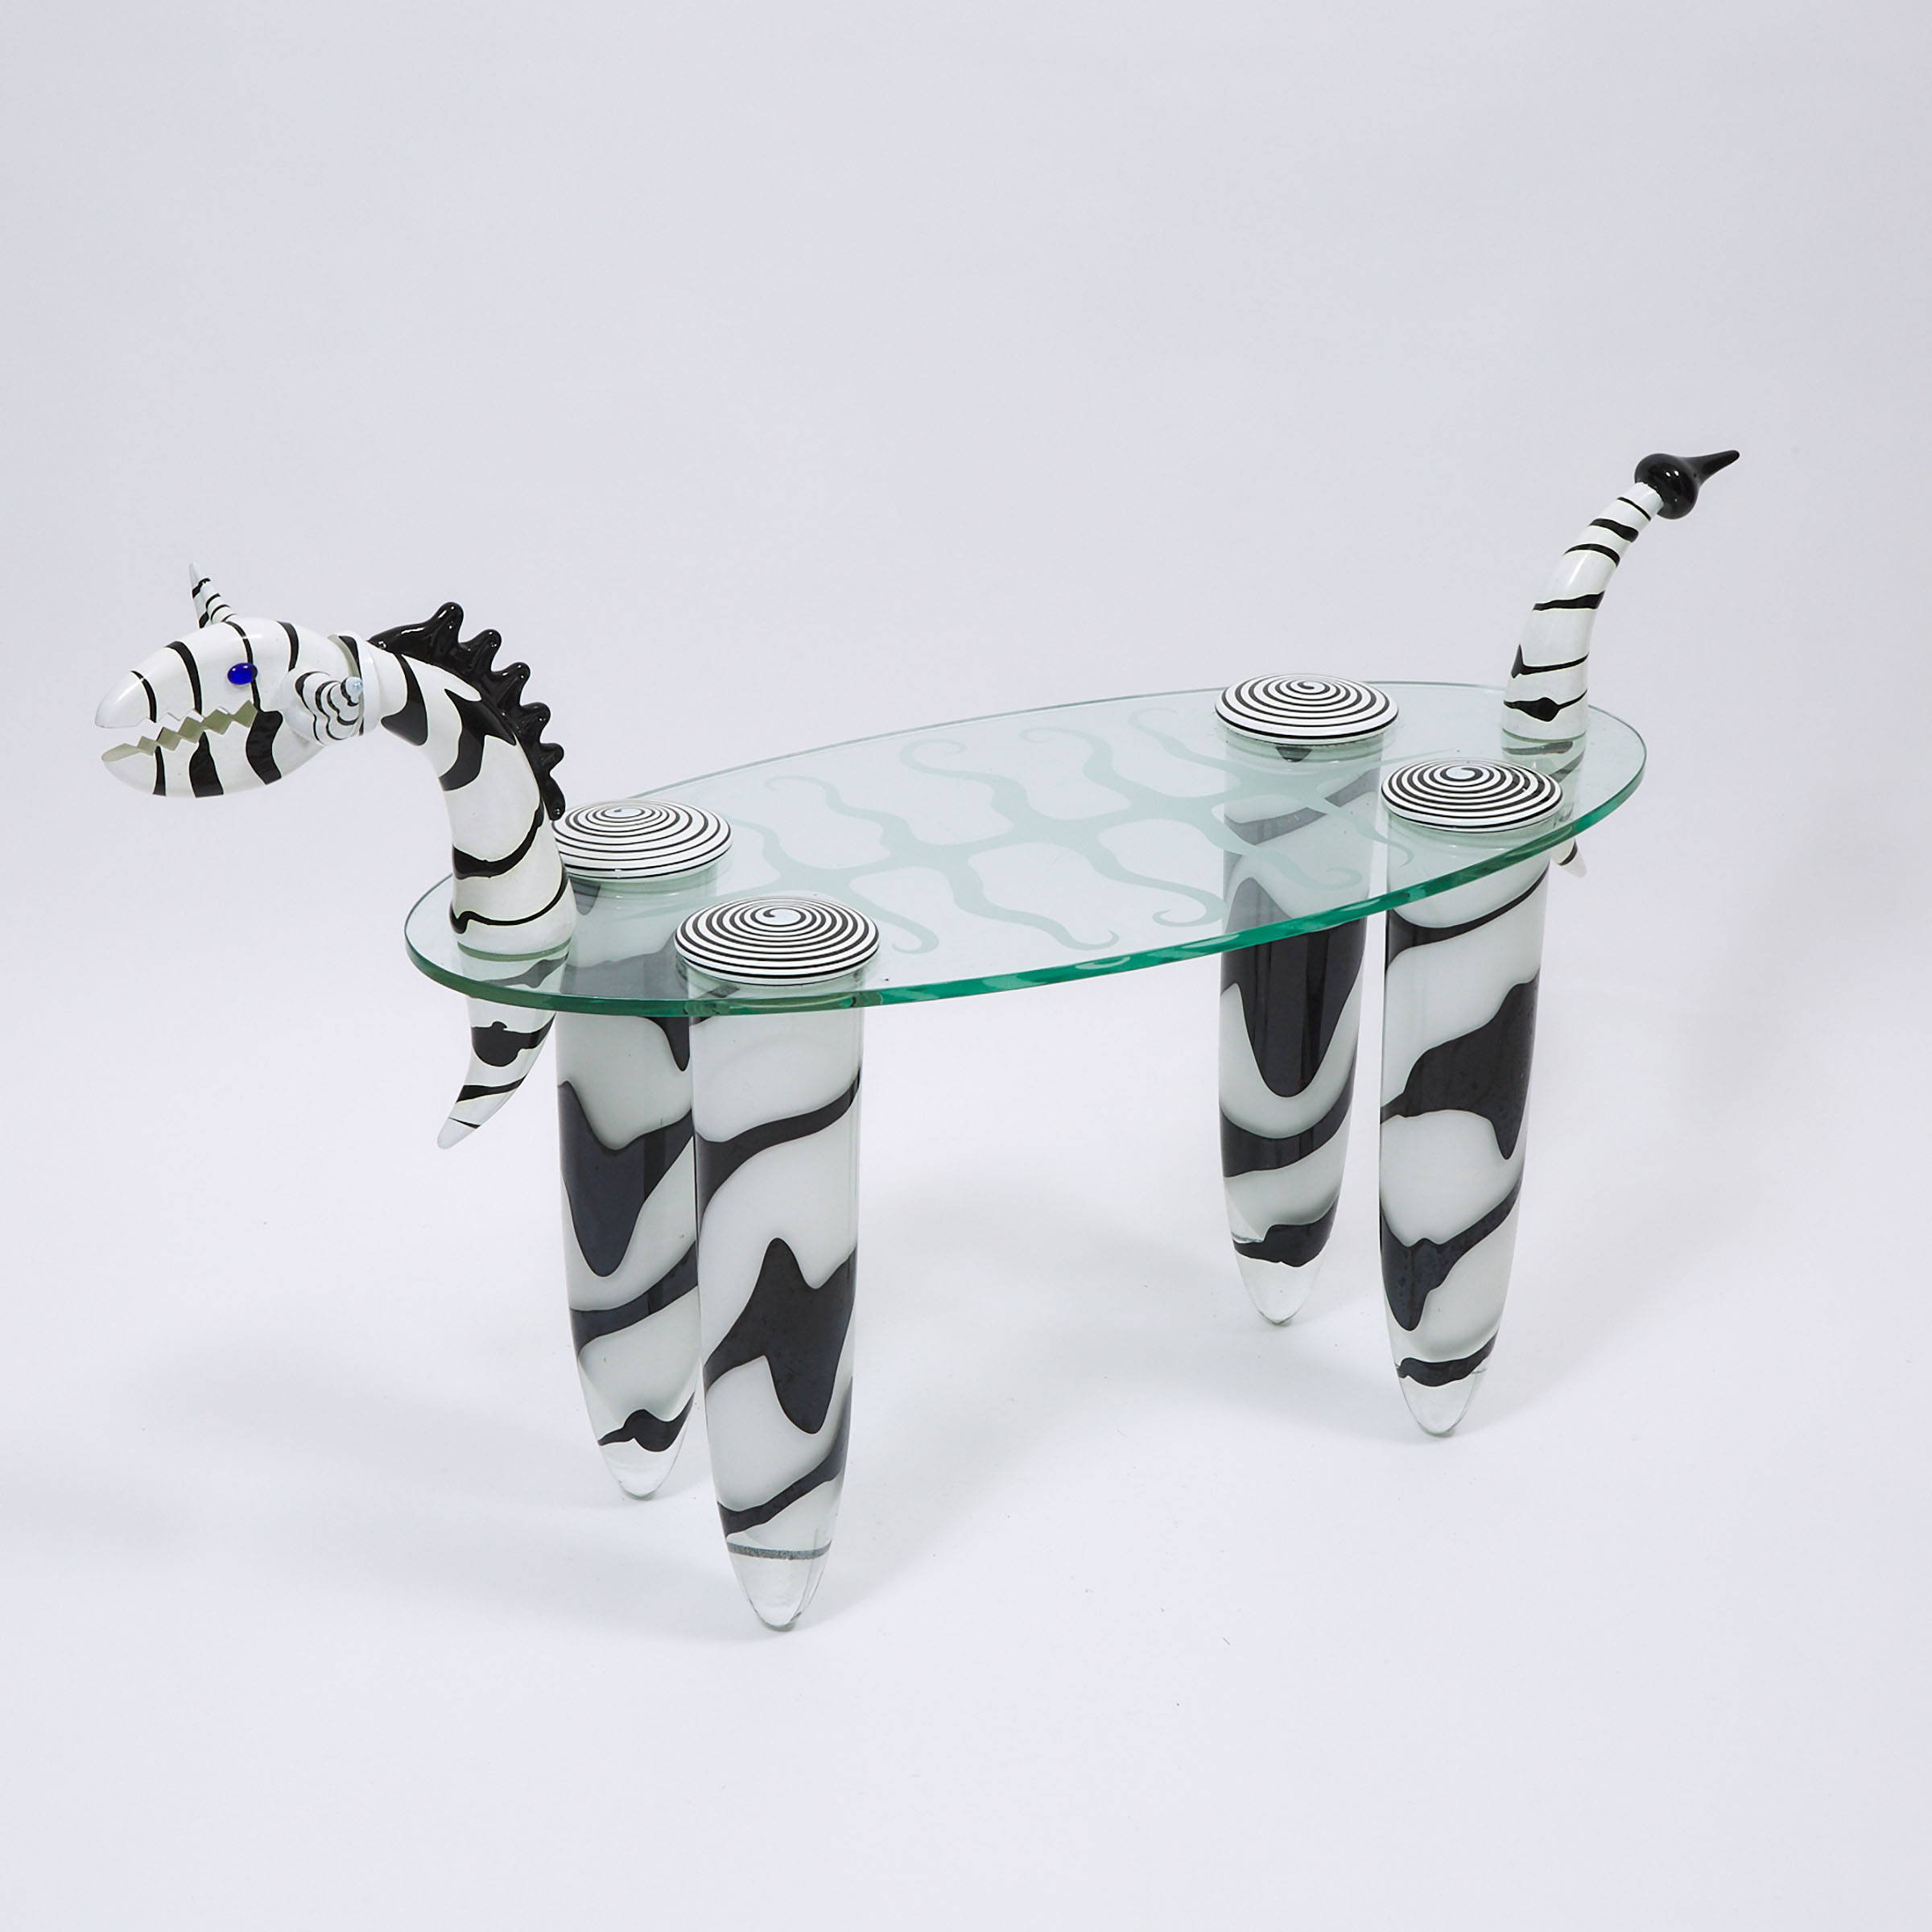 Glass Stylized Zebra Form Coffee Table, Borowski Glass Studio, Poland, early 21st century